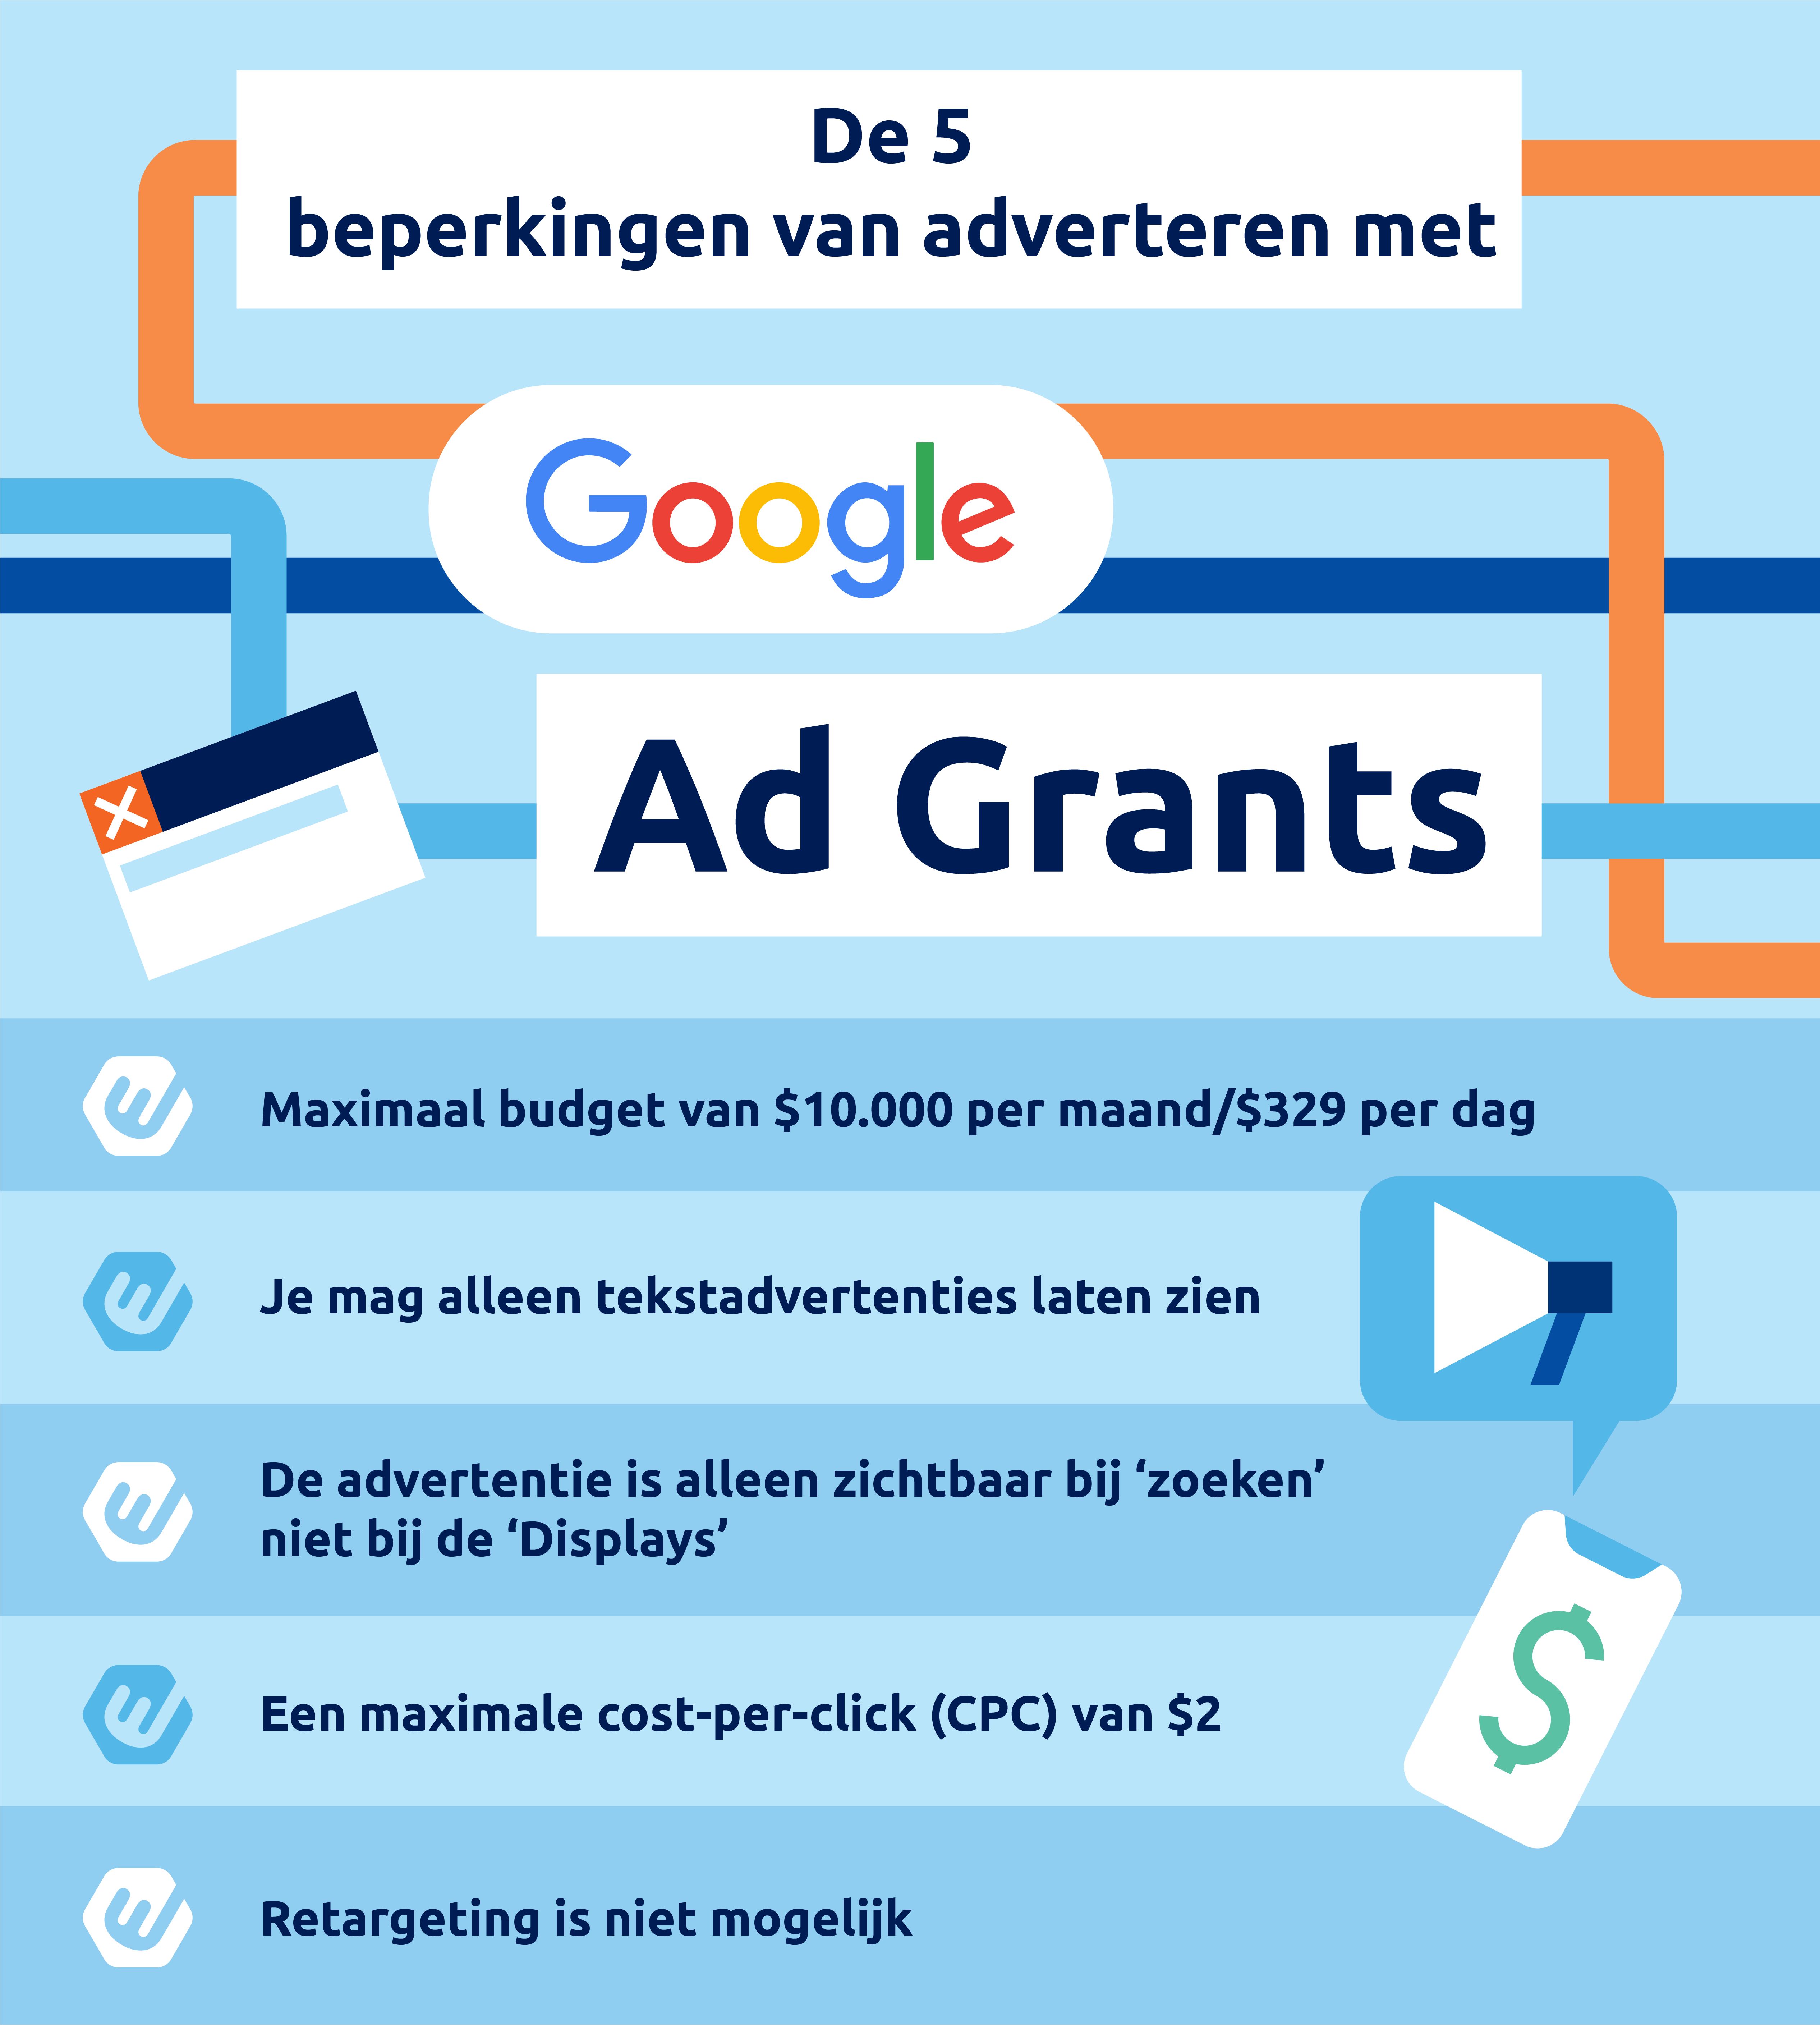 De vijf beperkingen van adverteren via Google Ad Grants